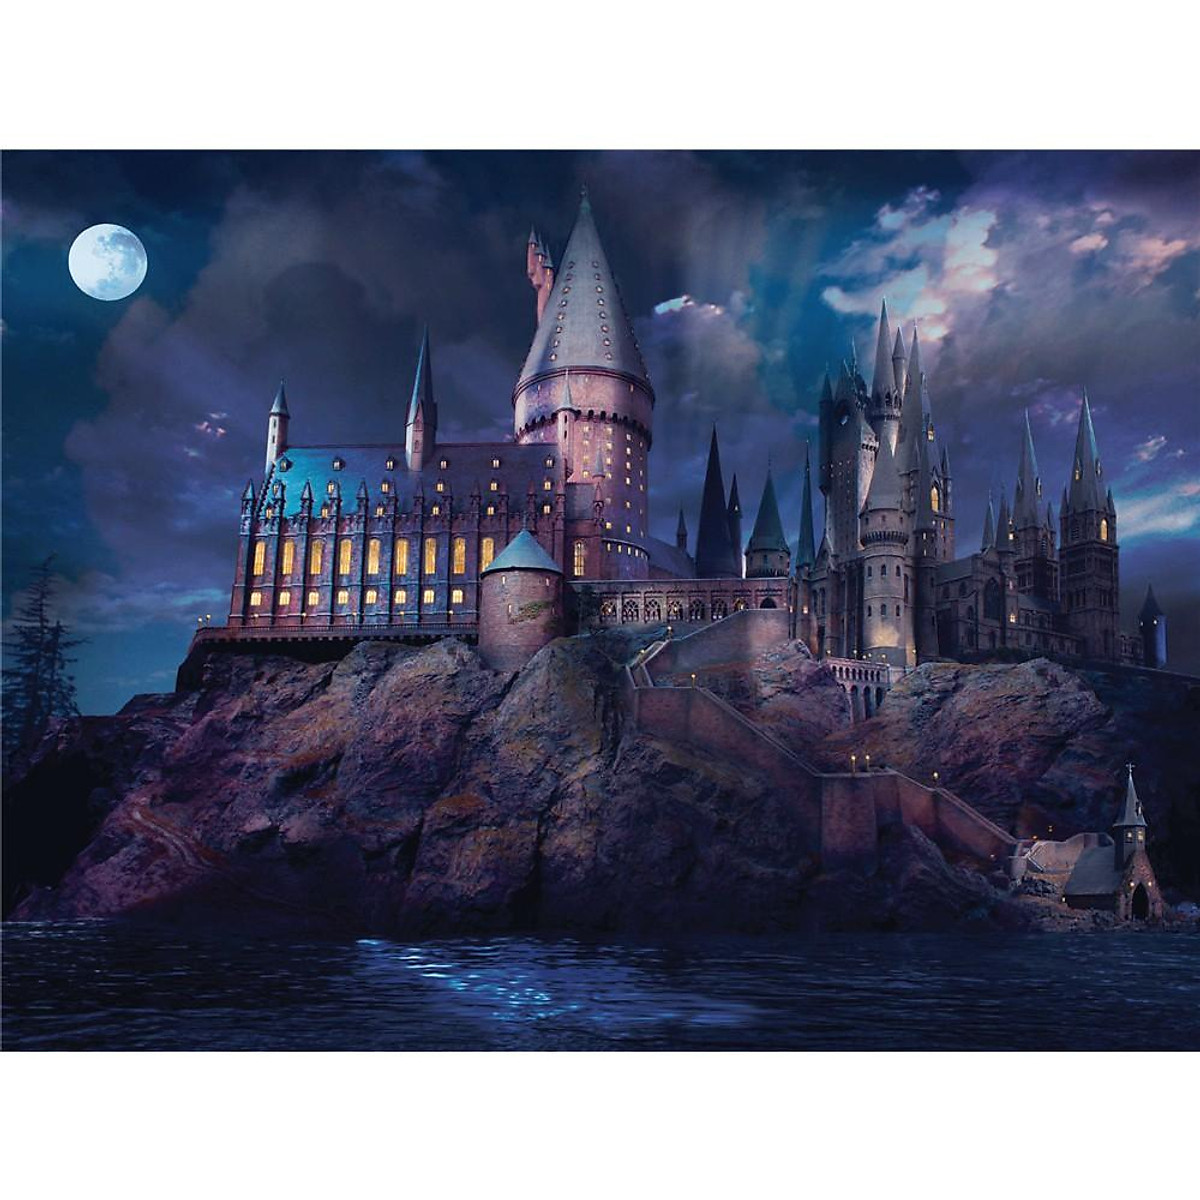 Hình nền  hình minh họa đêm Sao Harry Potter Cú Harry Potter và bảo  bối tử thần Apofiss Hedwig ánh sáng bóng tối canh Ảnh chụp màn hình Hình  nền máy